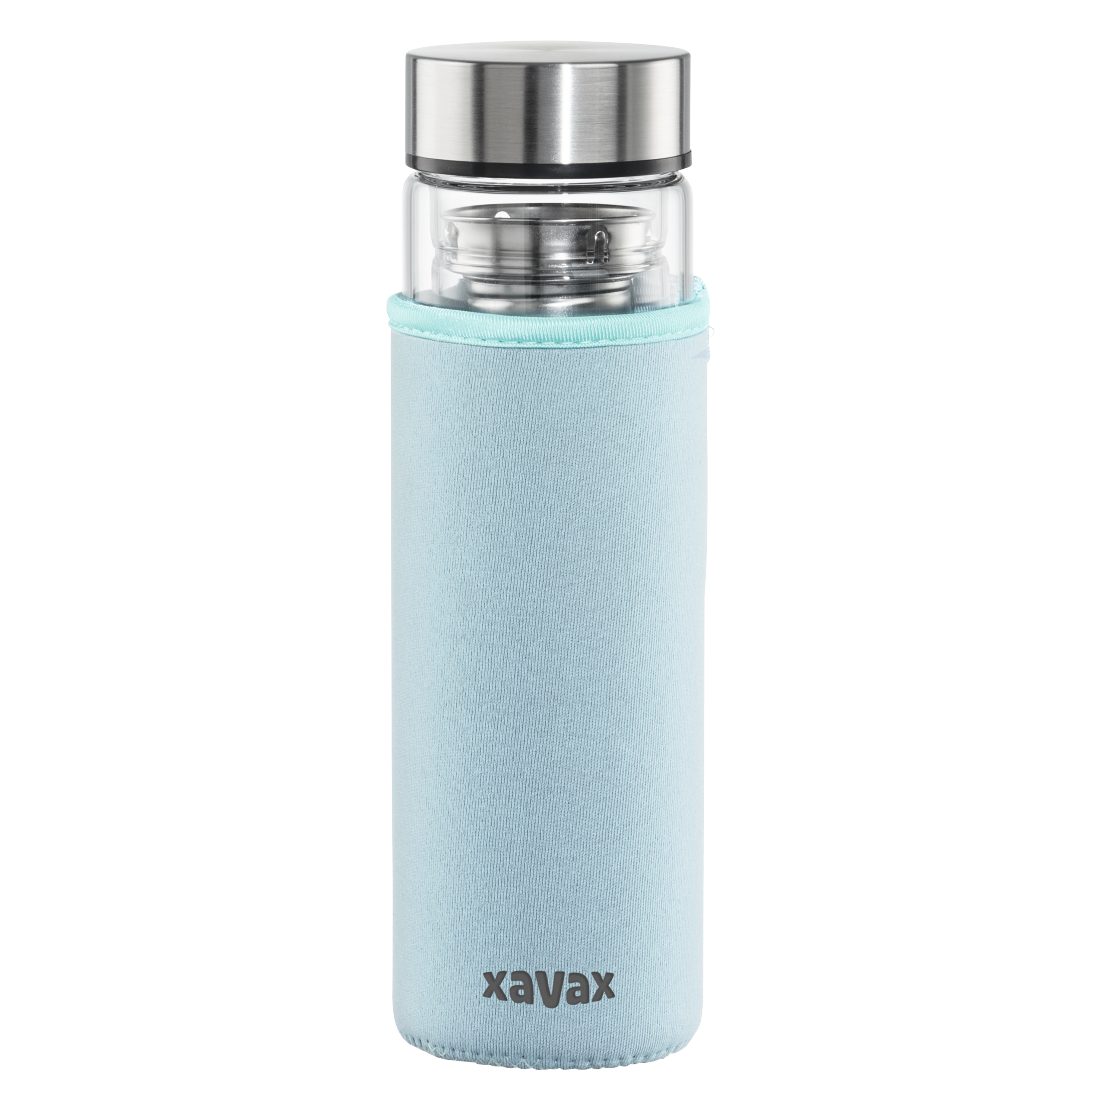 abx Druckfähige Abbildung - Xavax, Glasflasche, 450 ml, mit Schutzhülle, Einsatz, für Kohlensäure u. heiß/kalt